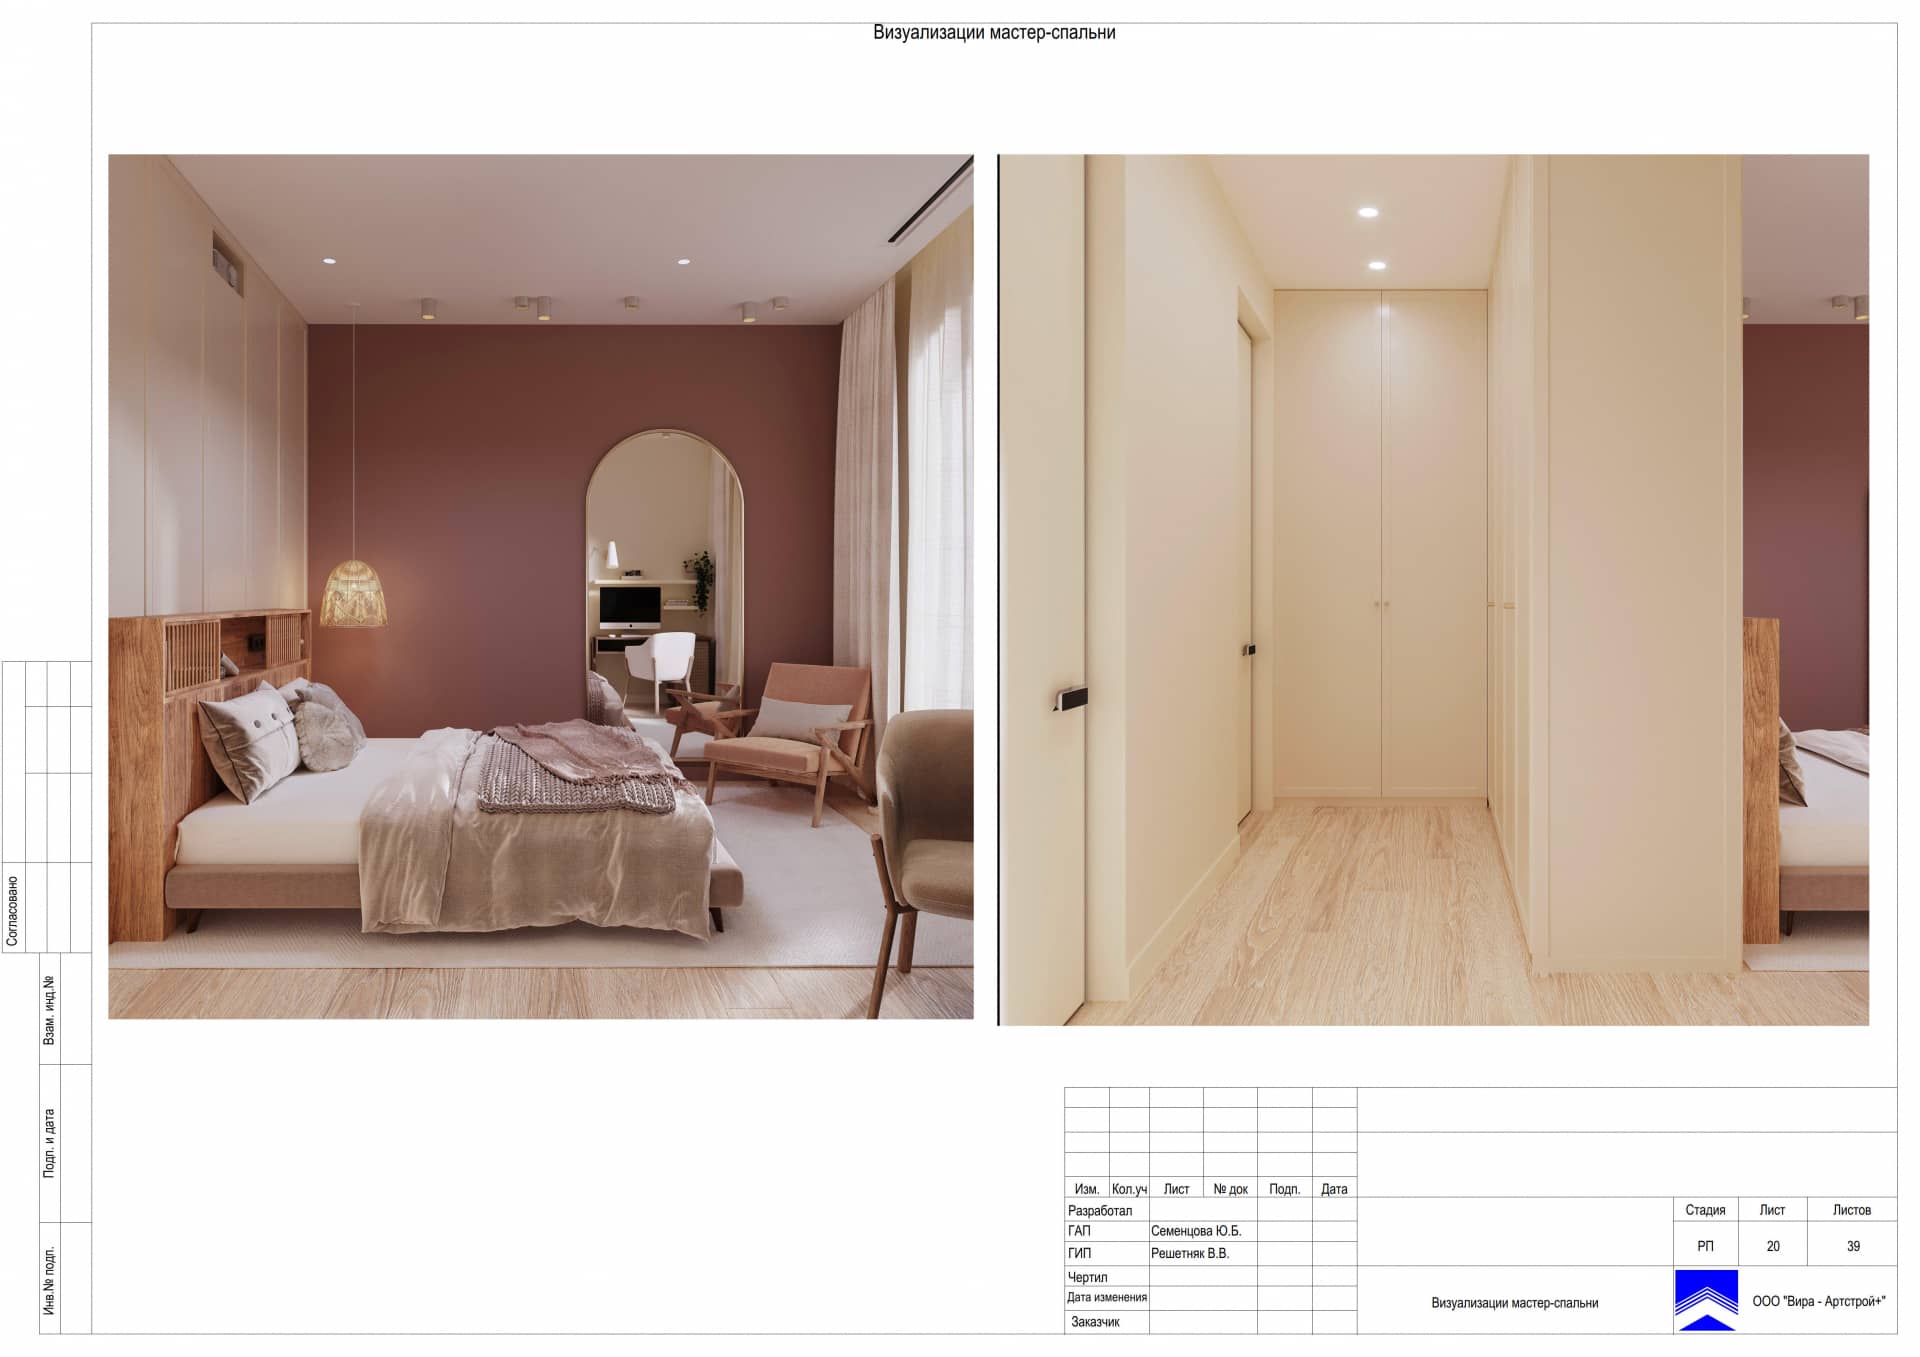 Визуализации мастер-спальни, квартира 106 м² в ЖК «Серебряный Парк»